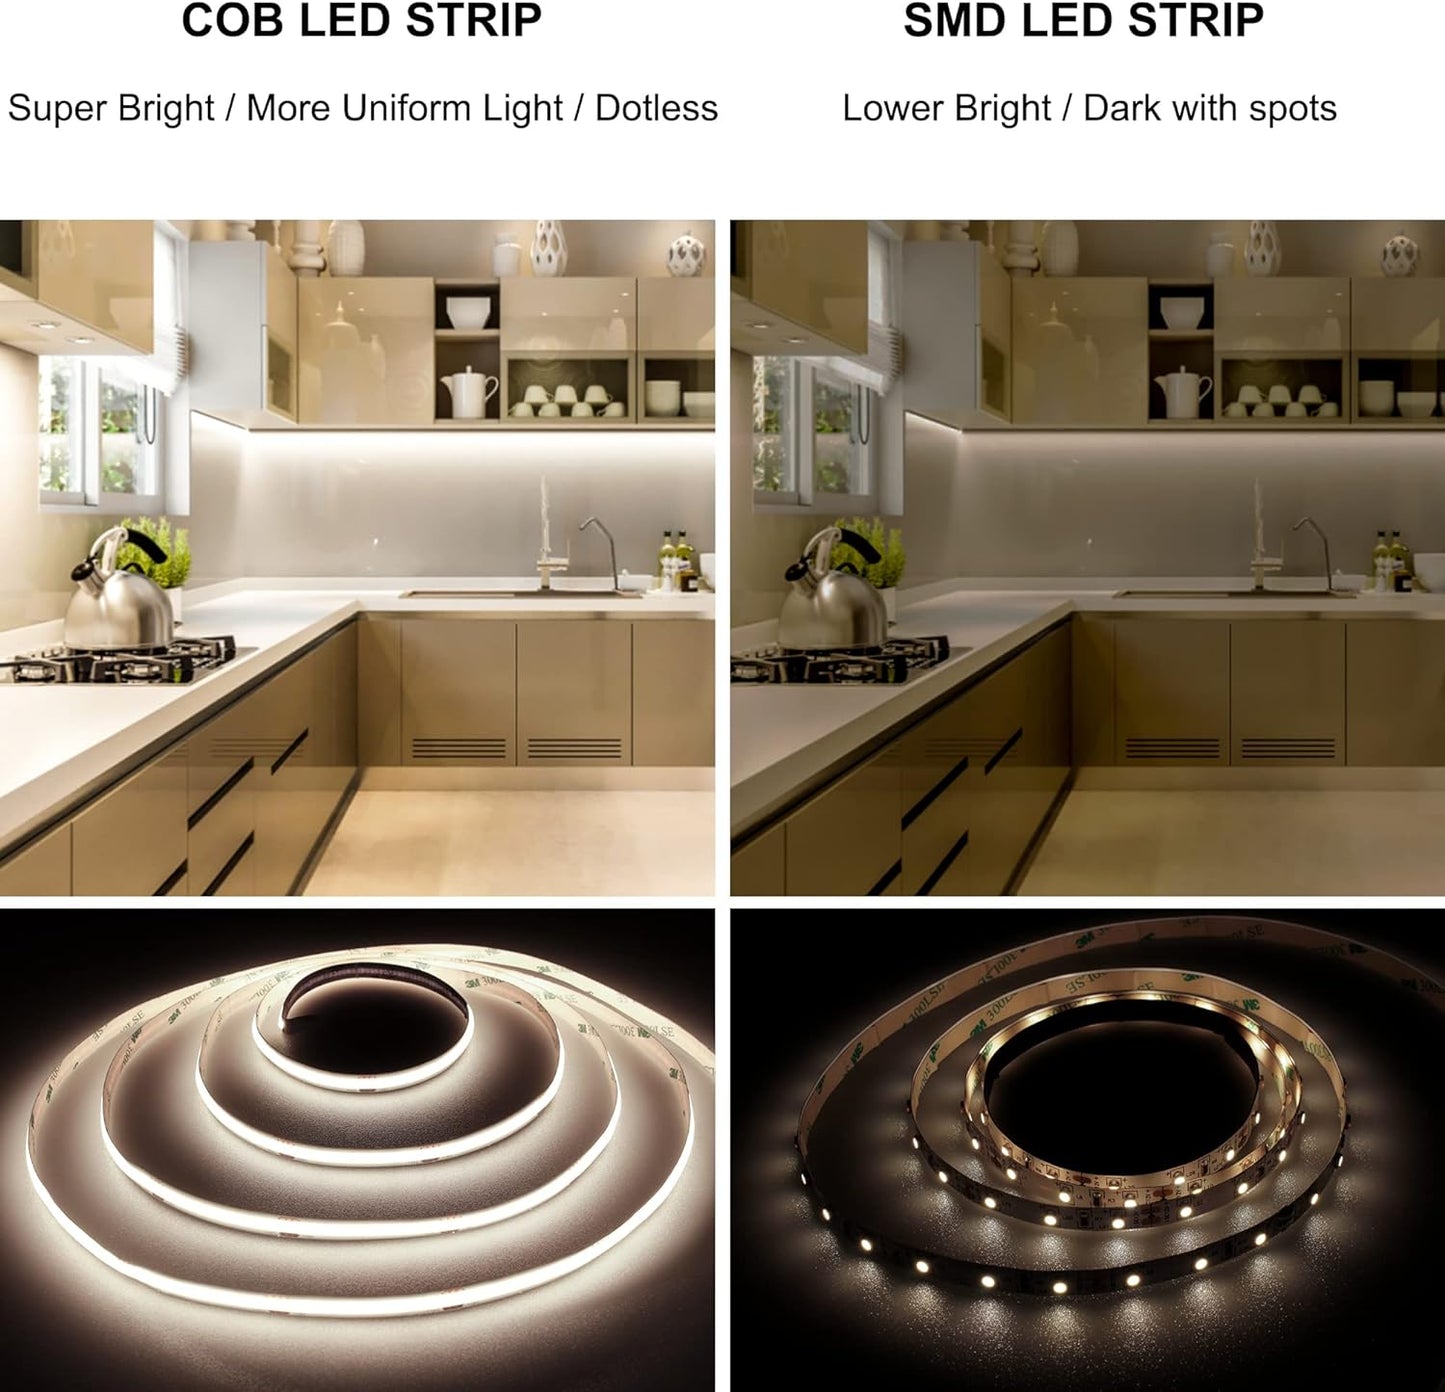 COB LED Strip Light 5M, Continus Dotless LED Strip Lights with 8mm Width, DC24V, CRI>90 for Bedroom Decoration